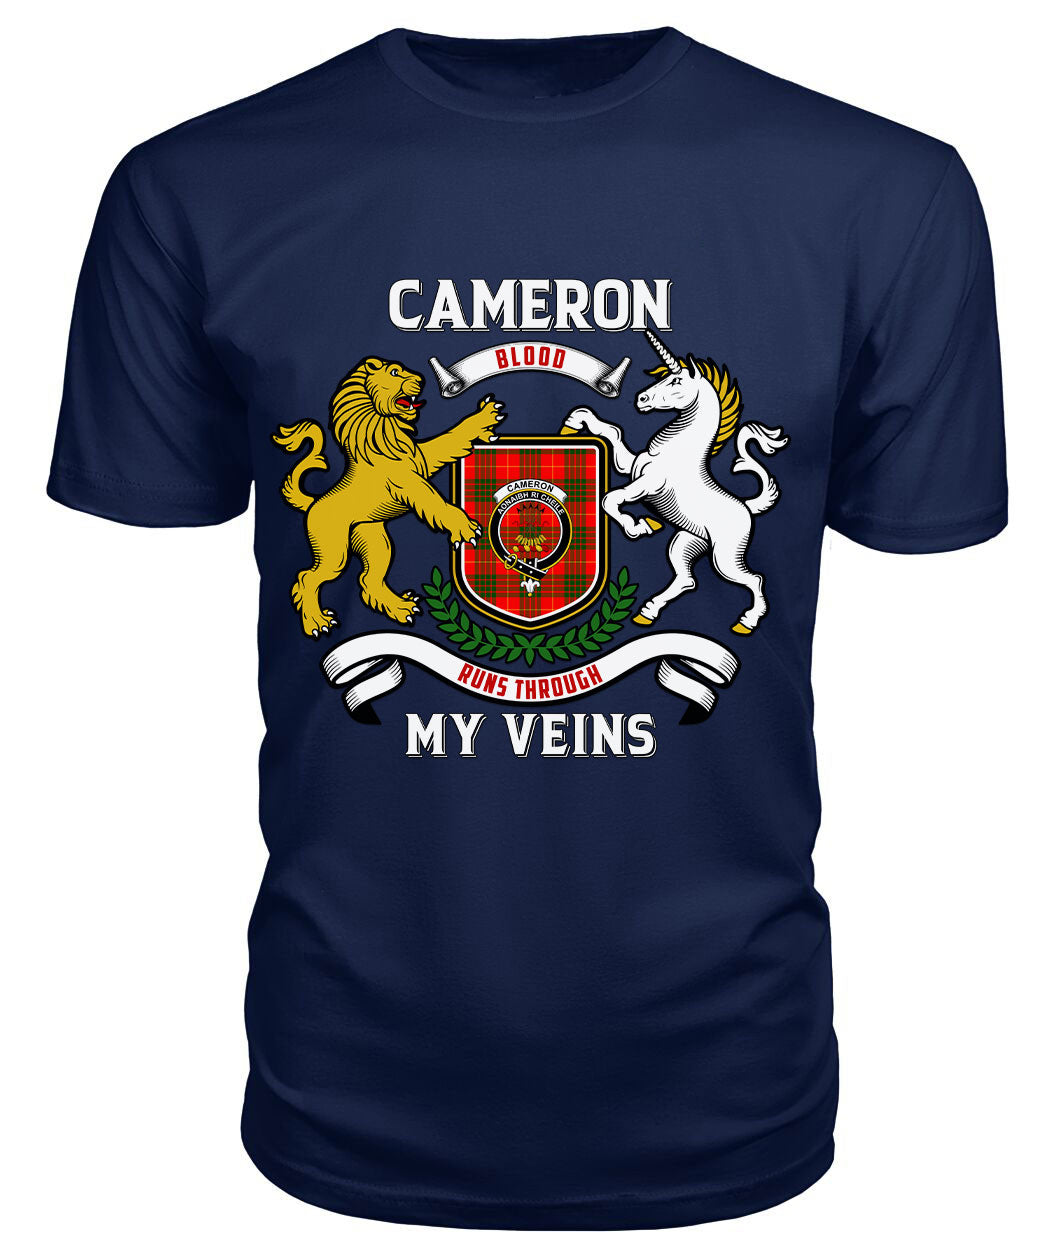 Cameron Modern Tartan Crest 2D T-shirt - Blood Runs Through My Veins Style